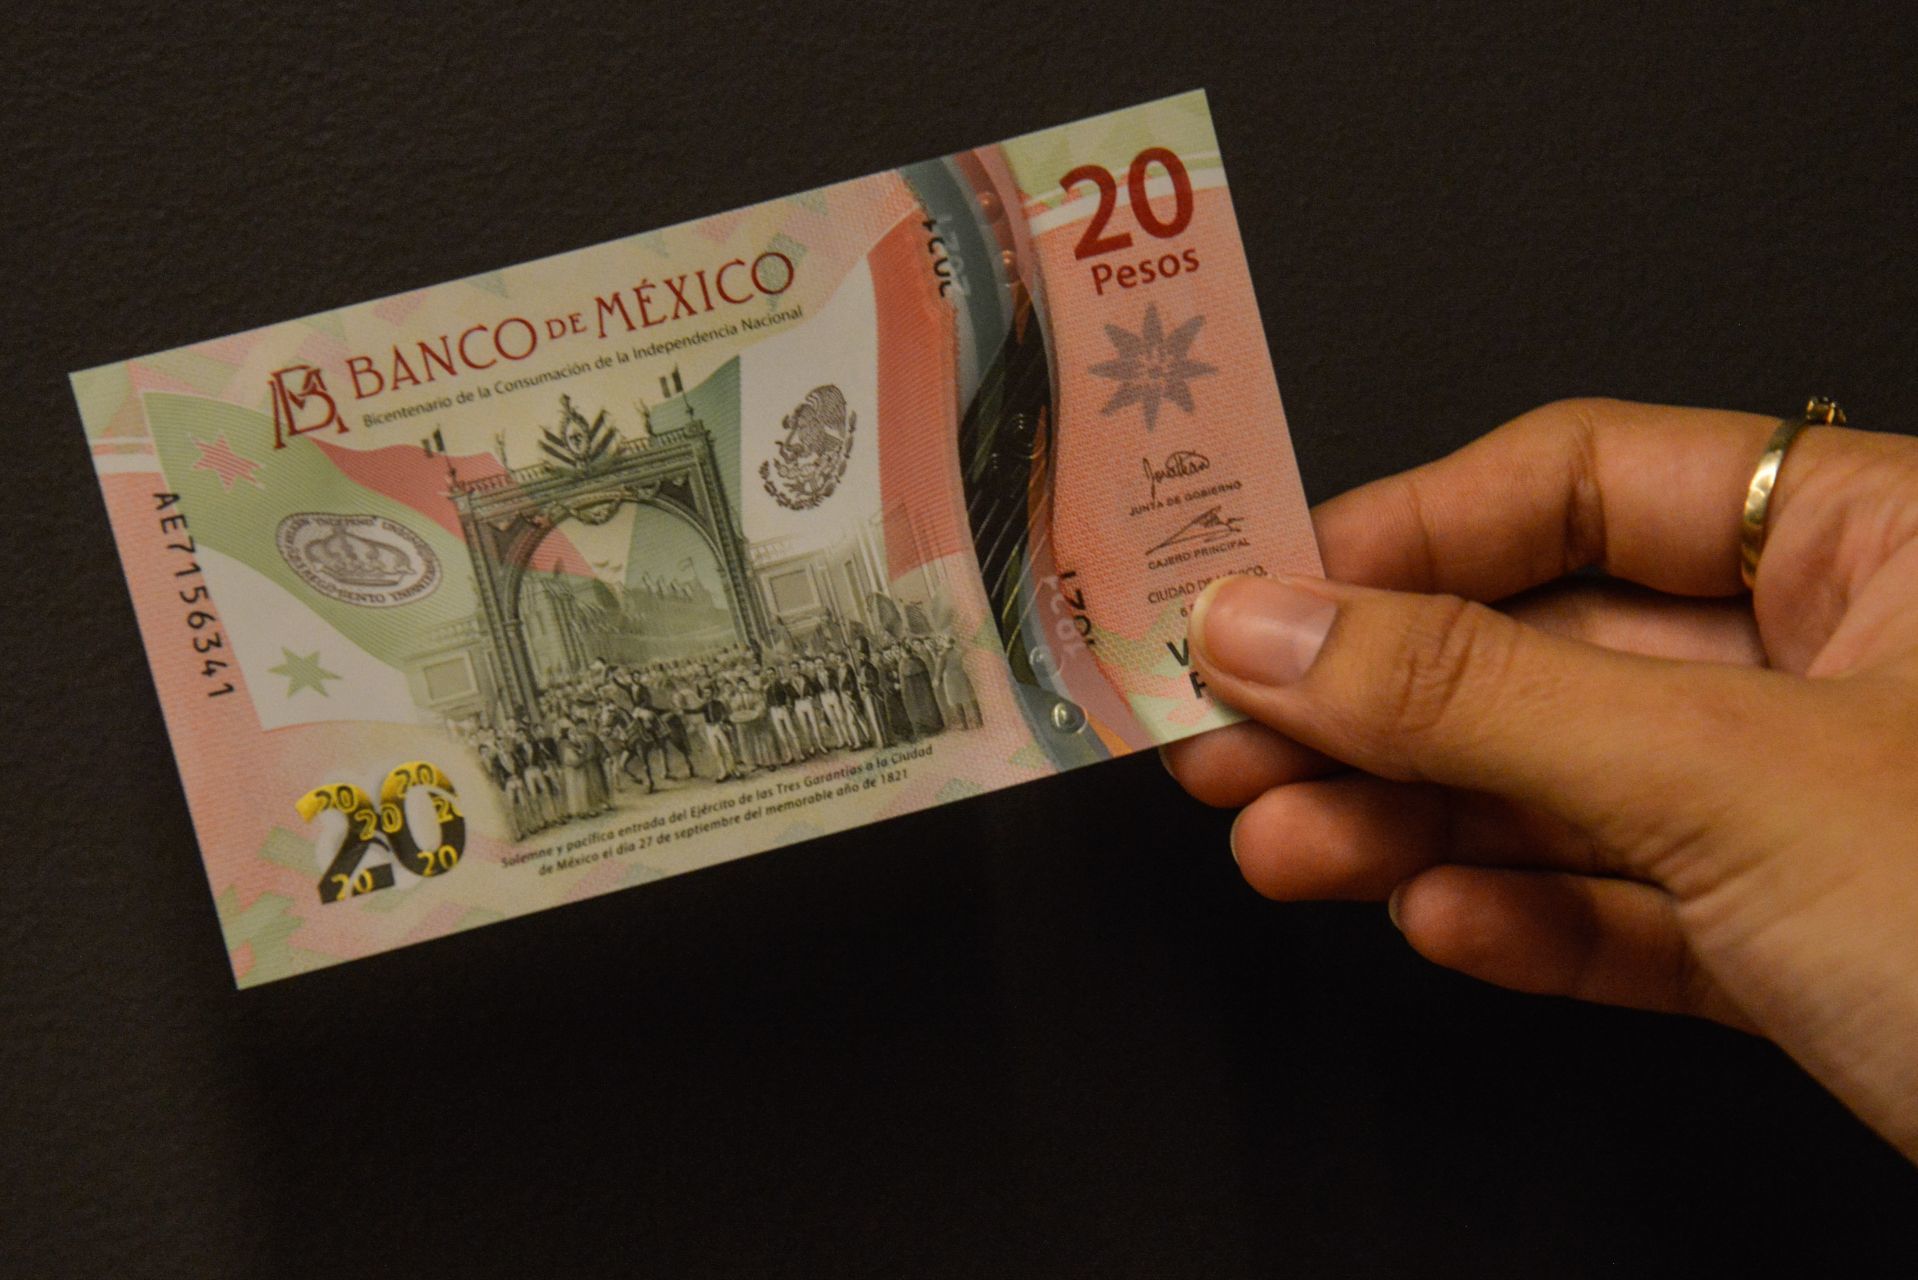 Lanzan nuevo billete de 20 pesos por la Independencia – Noticieros Televisa